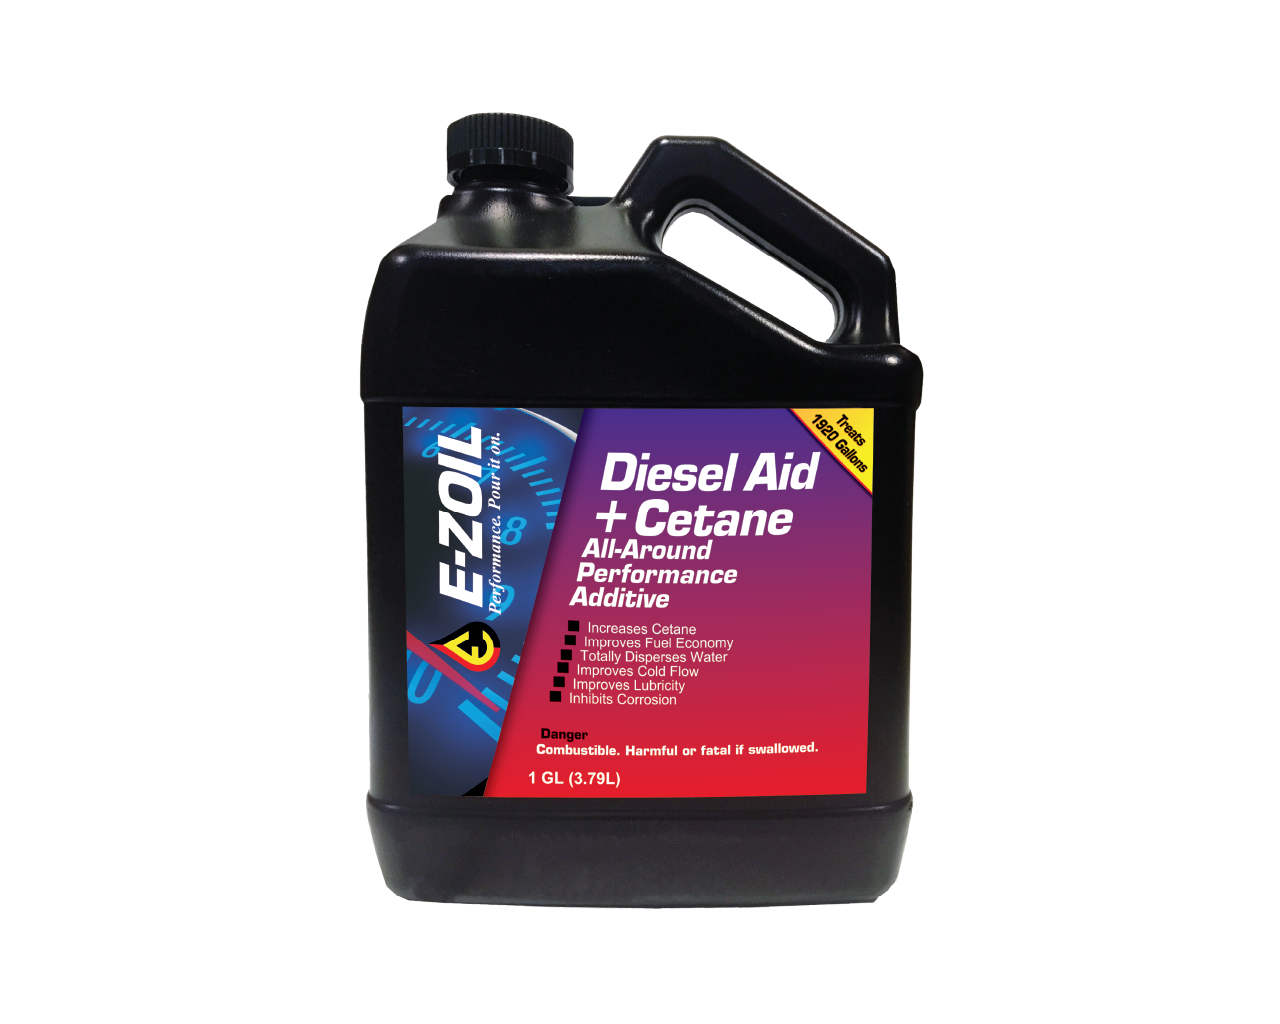 Diesel Aid + Cetane 1 GL